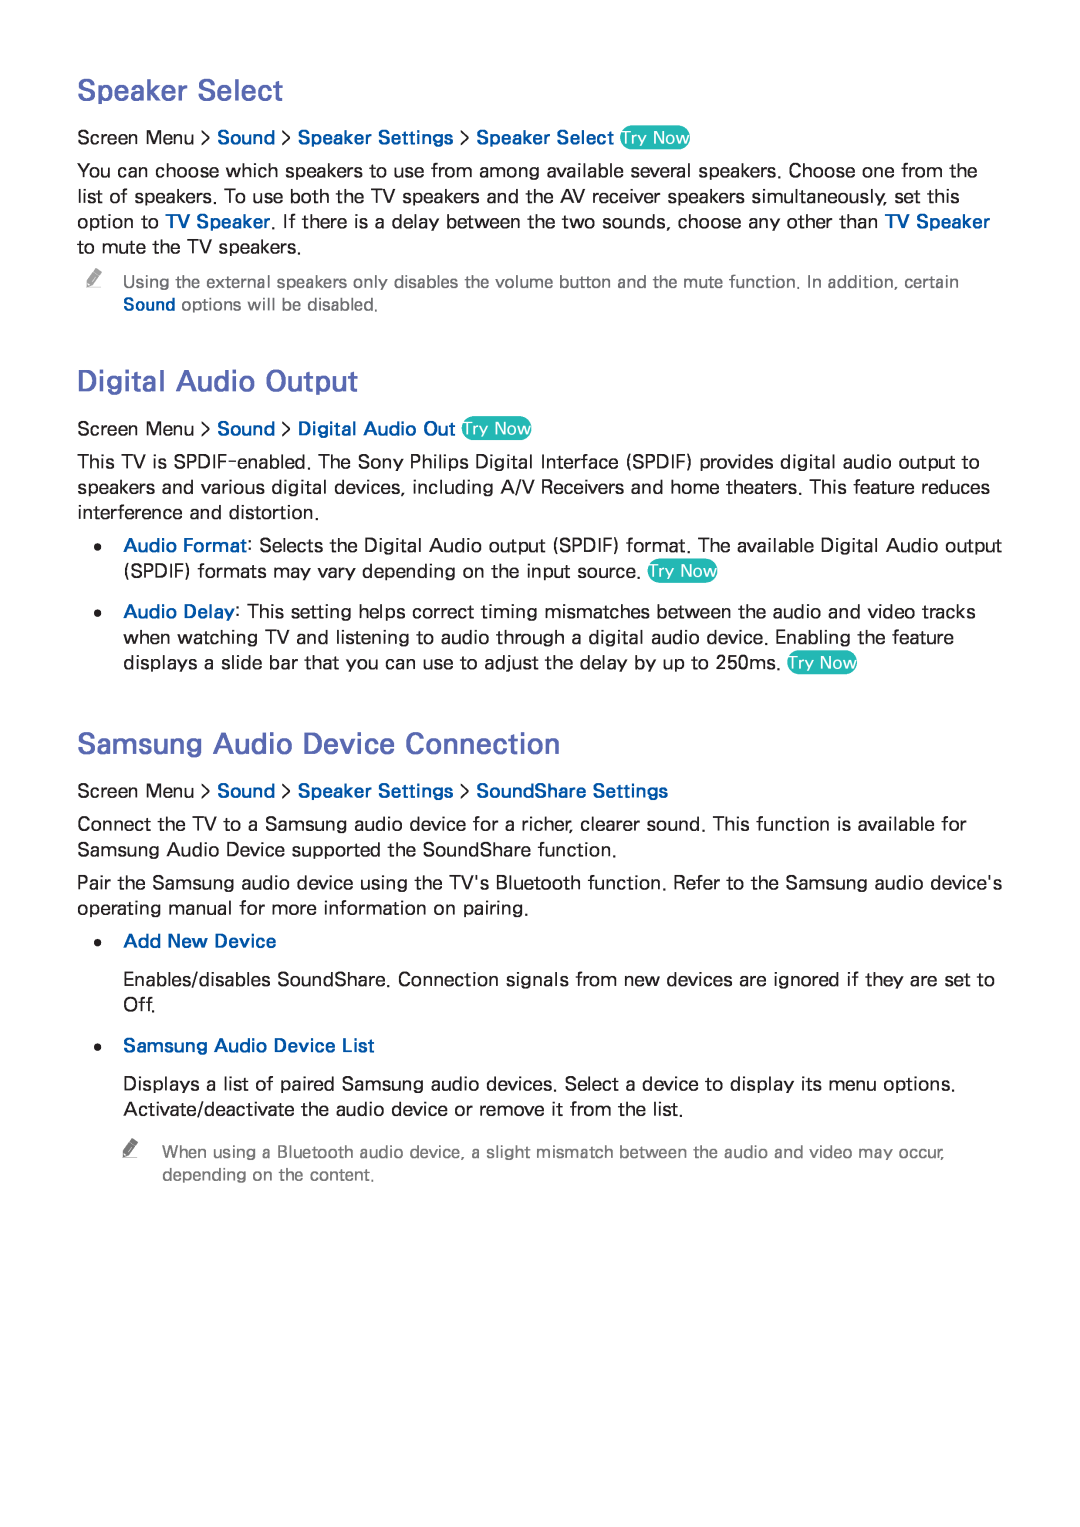 Samsung UN65F8000XZA, UN75F8000XZA Speaker Select, Digital Audio Output, Samsung Audio Device Connection, Add New Device 